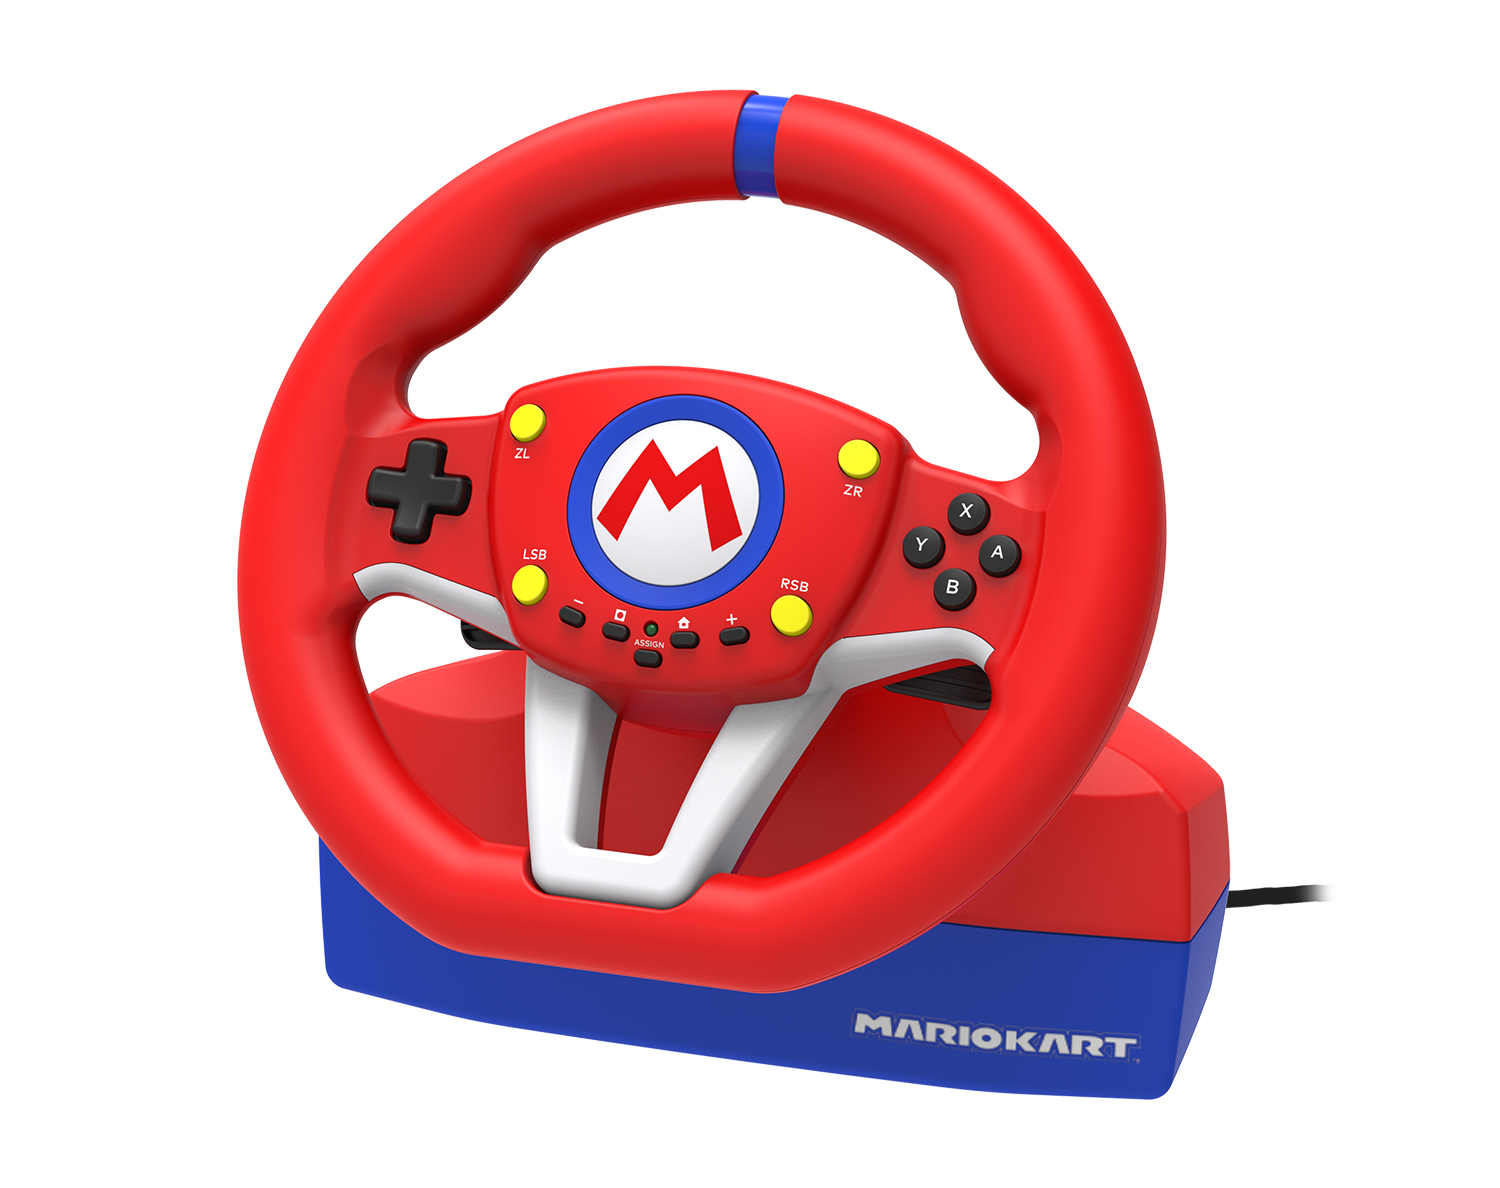 株式会社 HORI | マリオカートレーシングホイール for Nintendo Switch